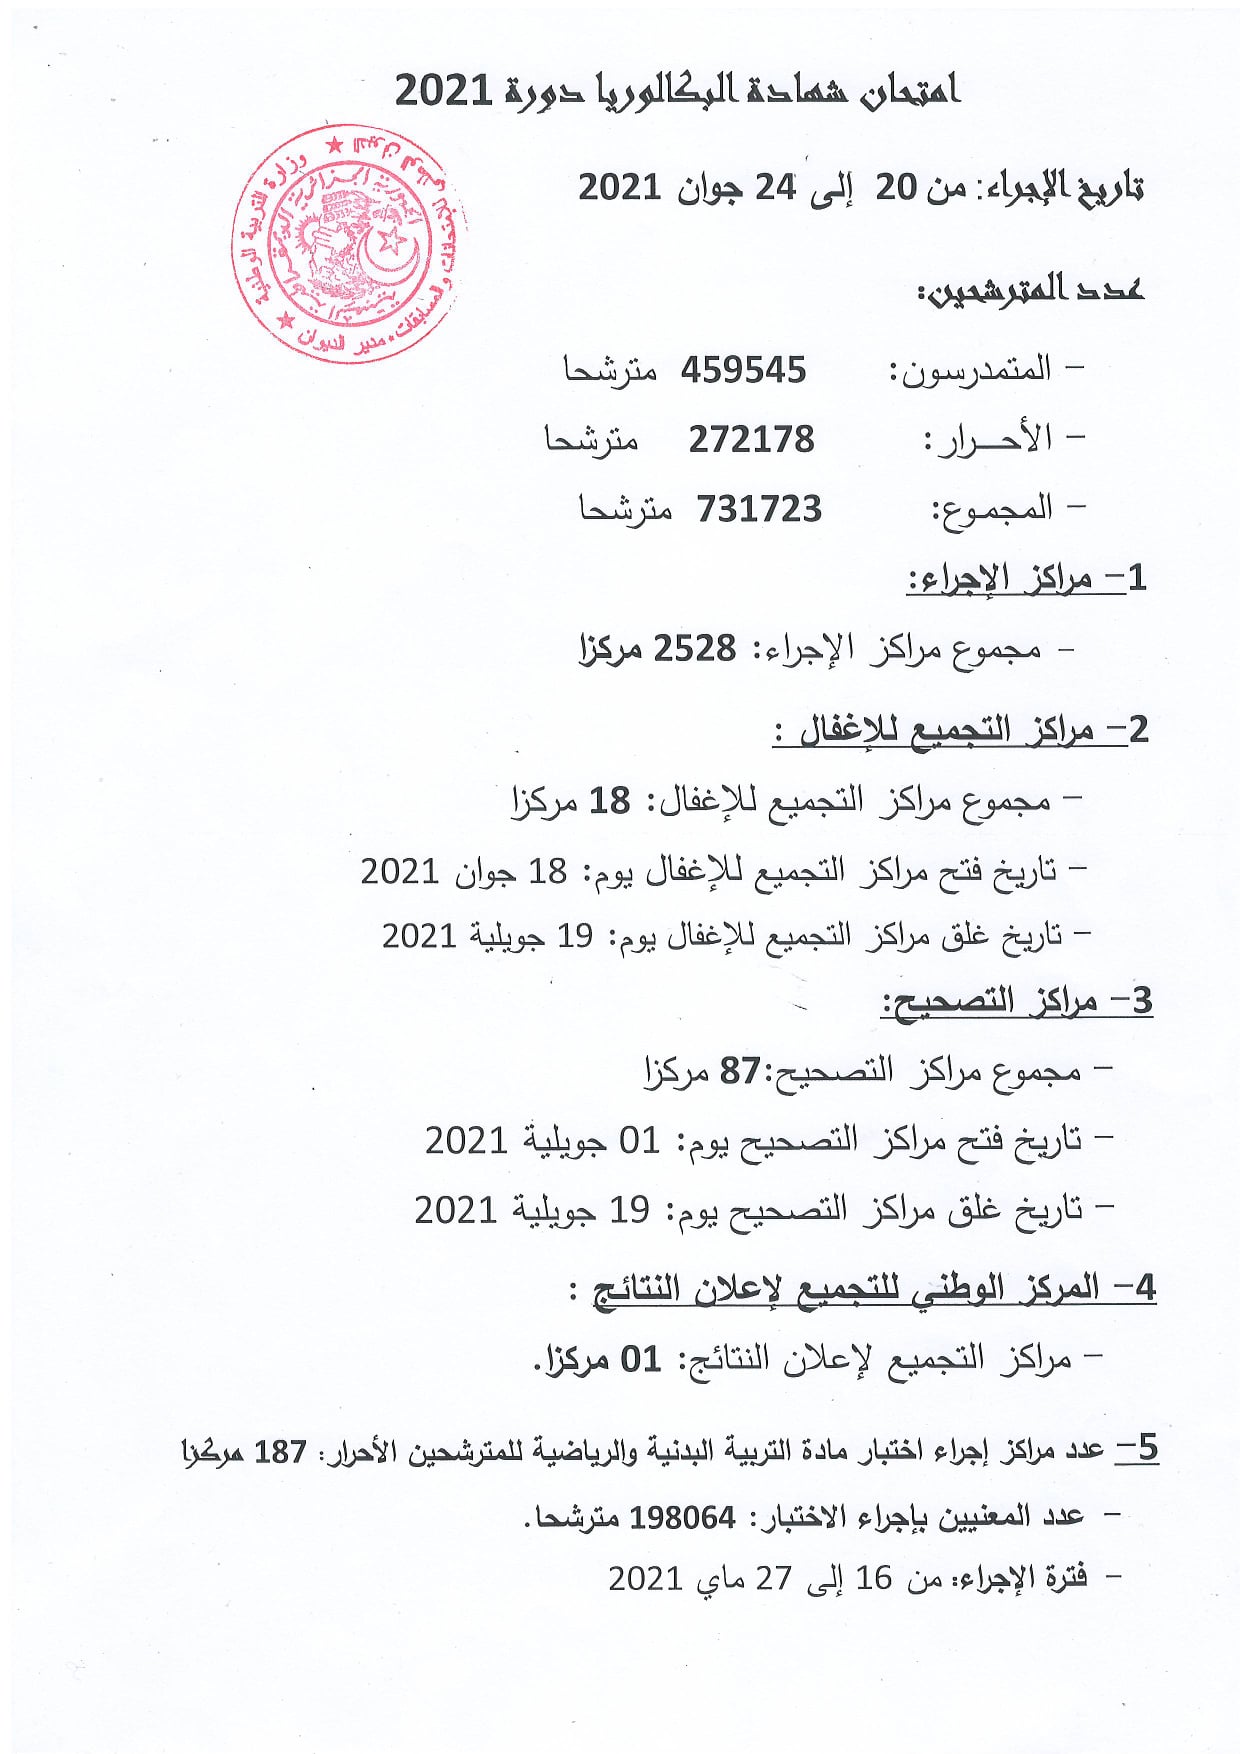 وزارة التربية تصدر البطاقة الفنية للامتحانات الرسمية دورة جوان 2021